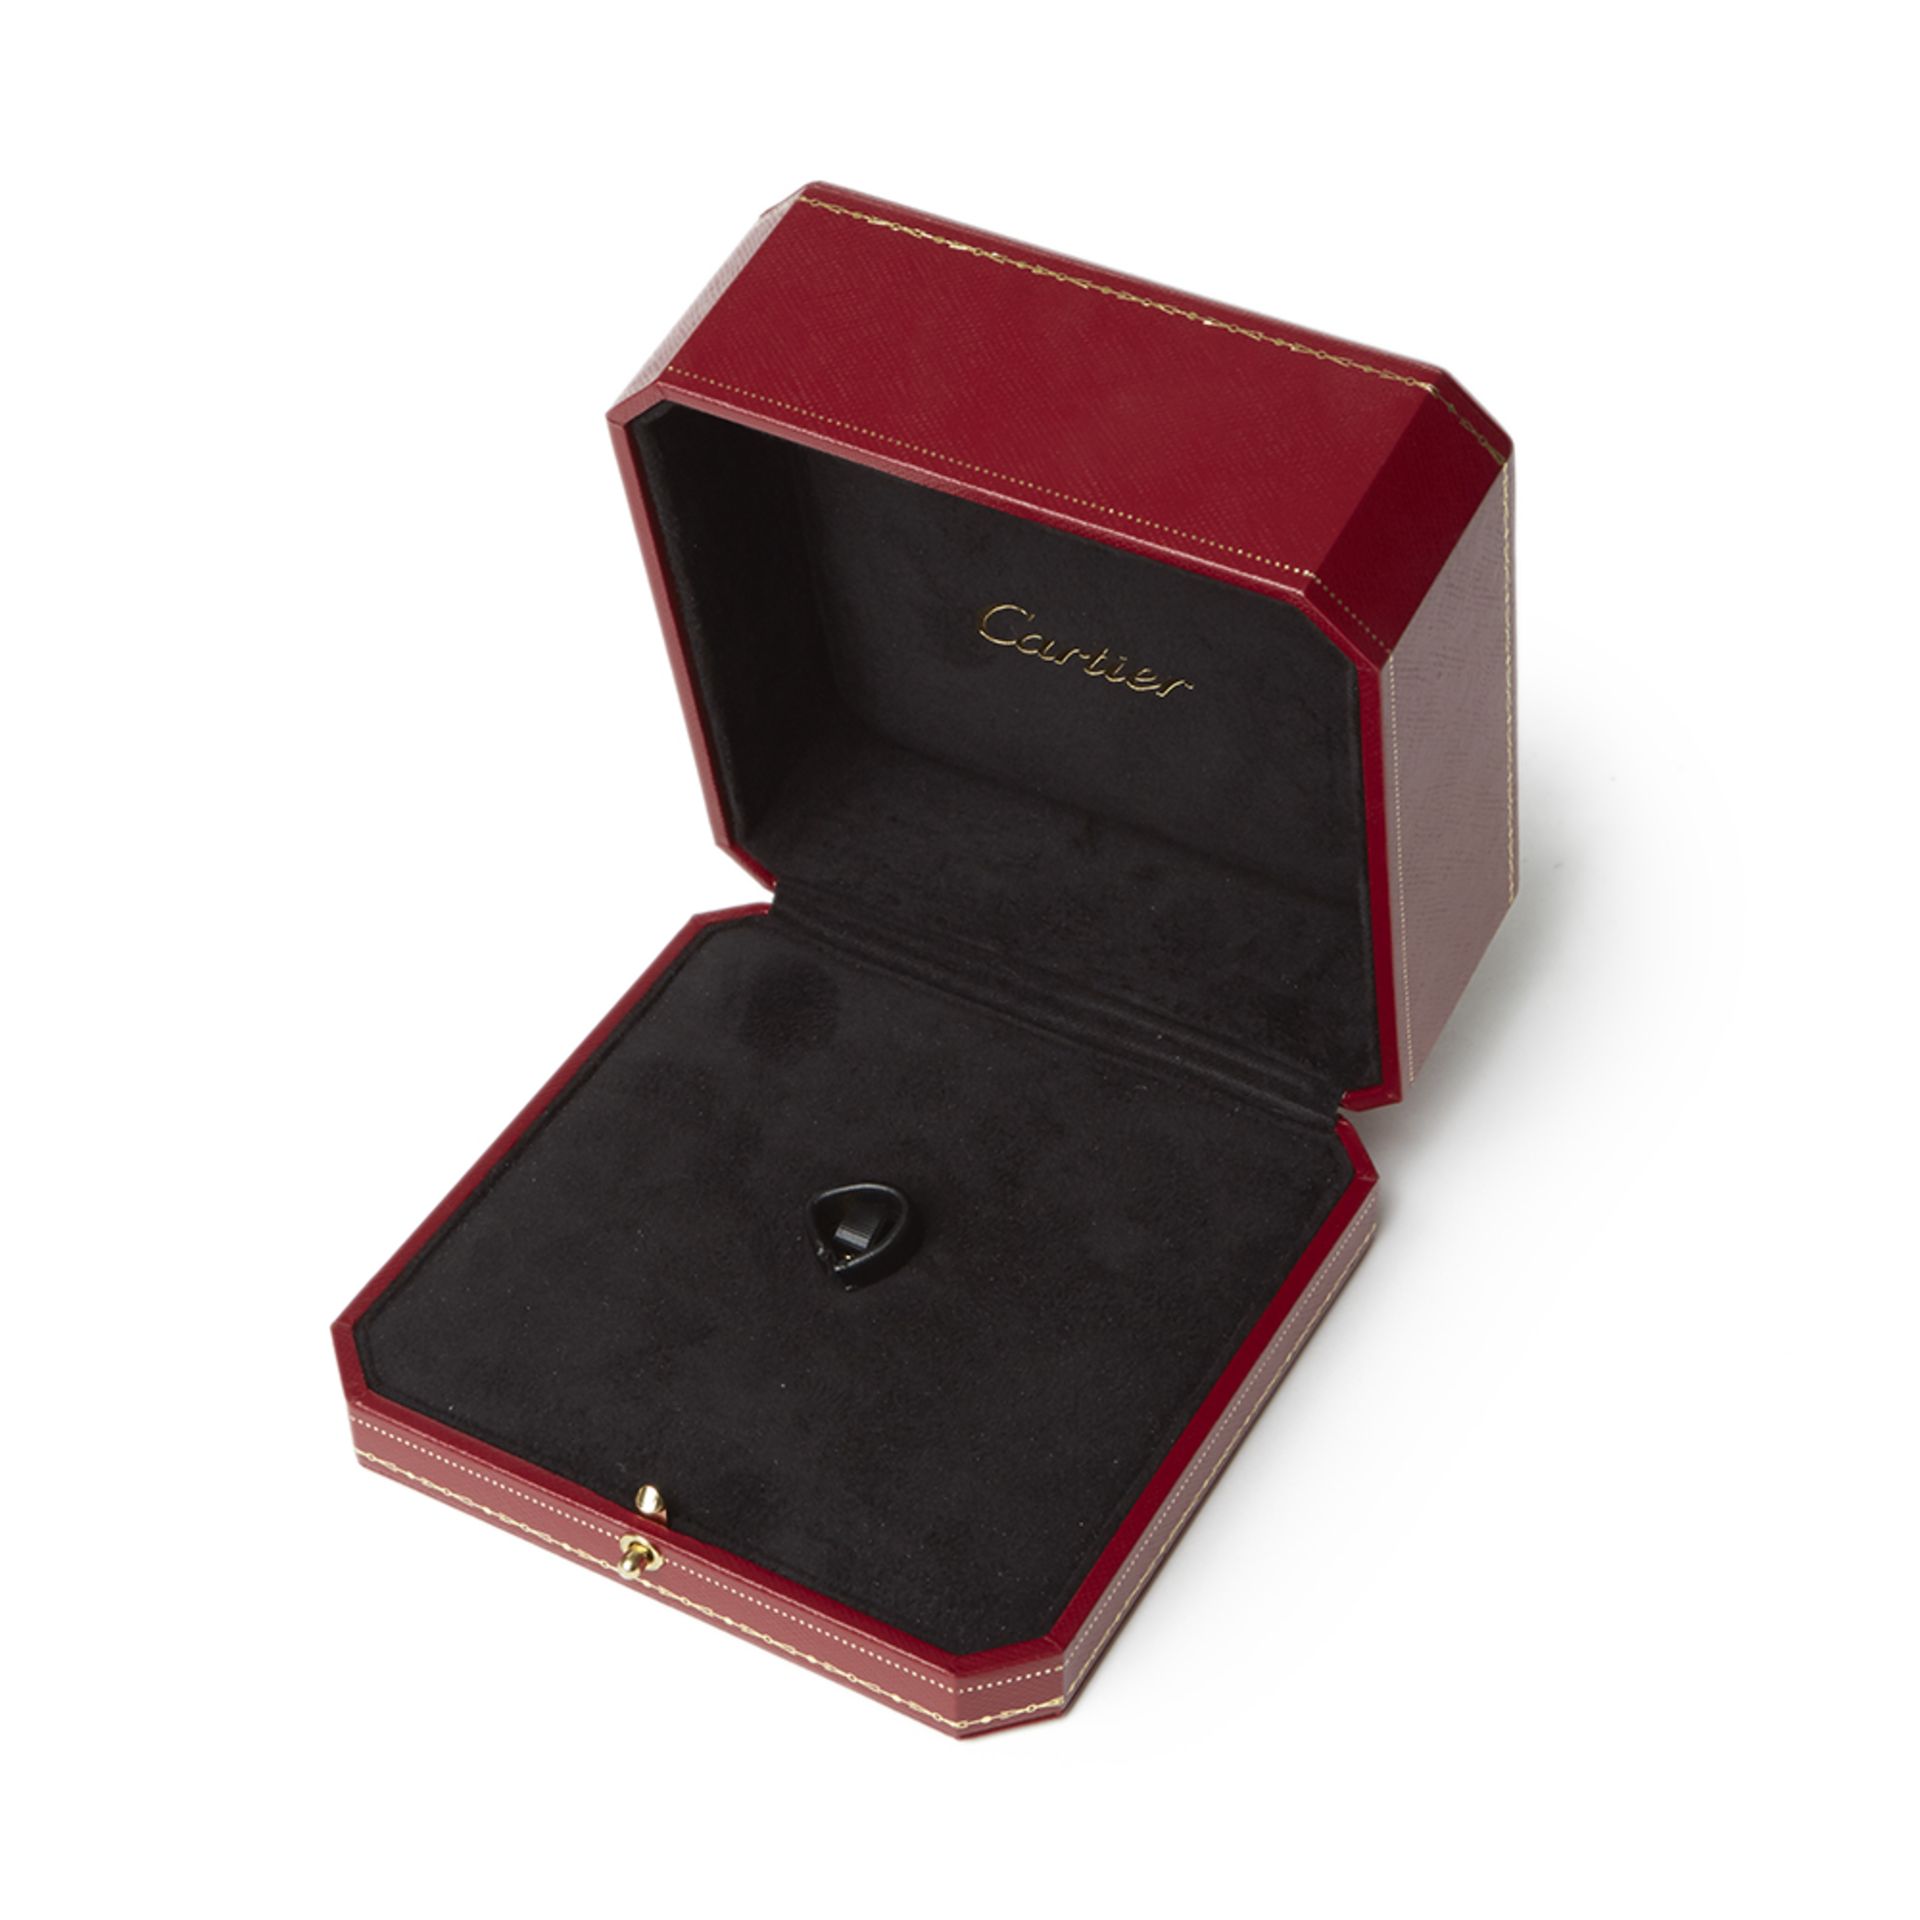 Cartier 18k Rose Gold Smoky Quartz & Diamond Lotus Ring - Image 9 of 10